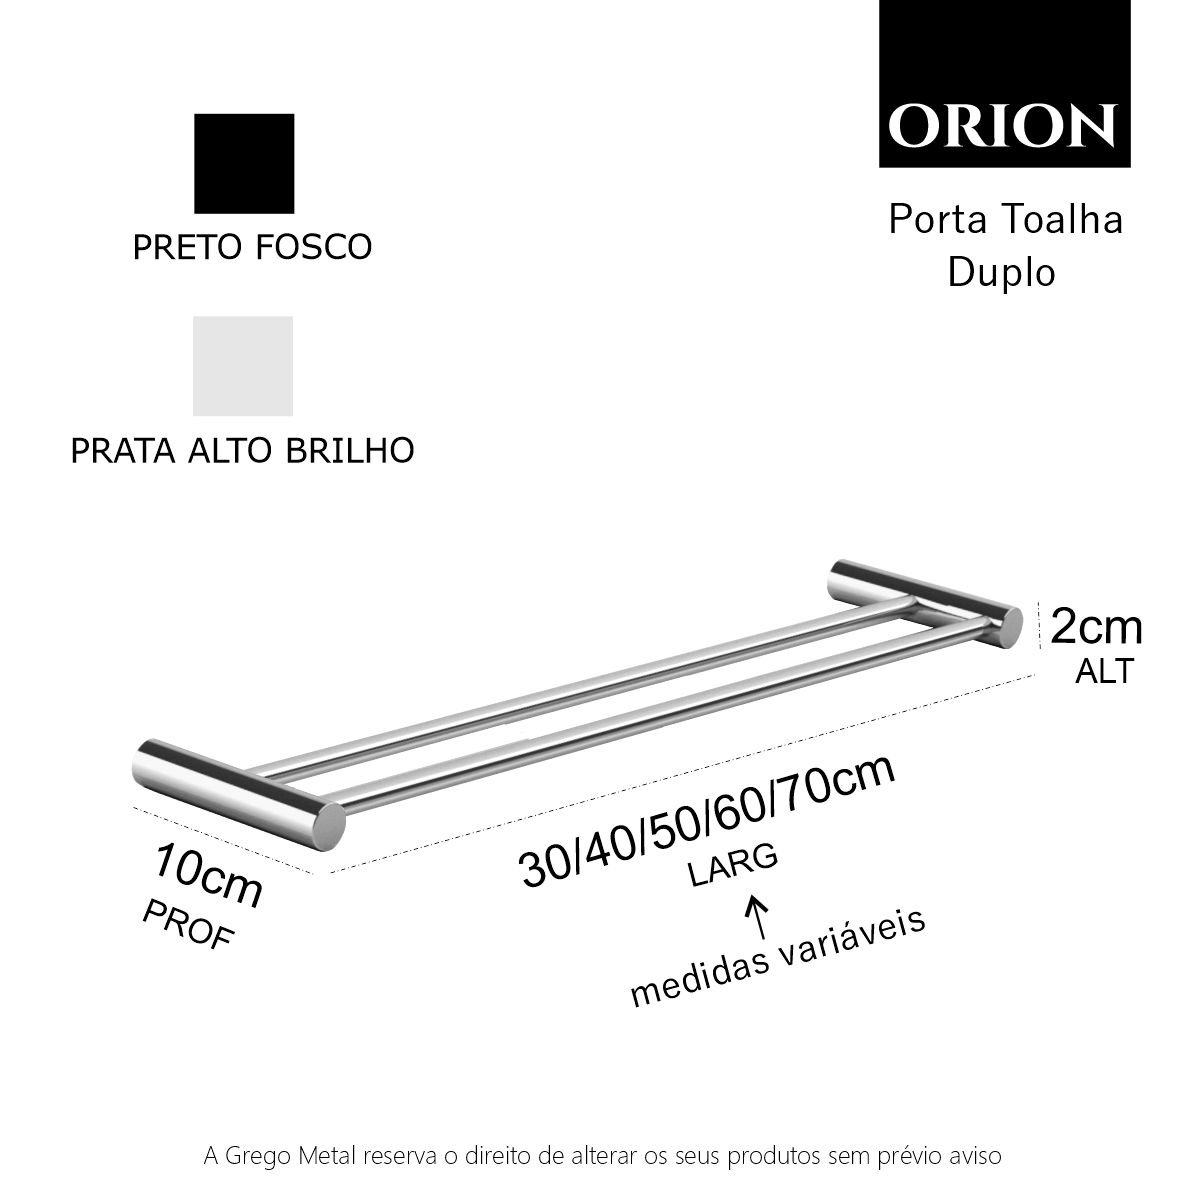 Porta Toalha Duplo 40cm Toalheiro Suporte Barra Grego Metal Alto Brilho Orion - 4